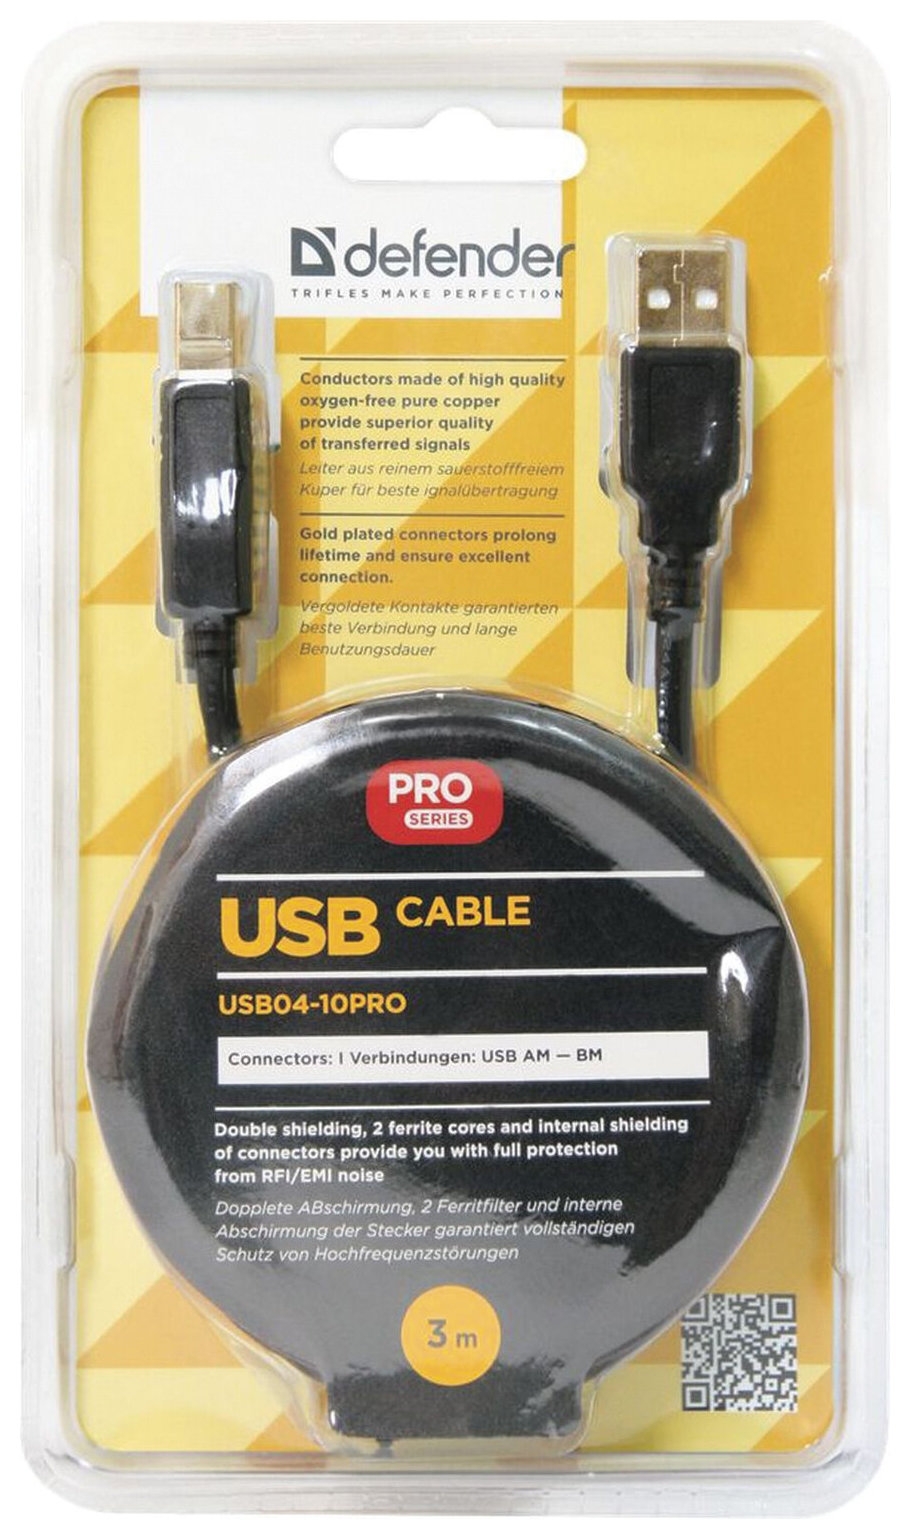 Кабель USB 2.0 Am-bm, 3 м, Defender, 2 фильтра, для подключения принтеров, МФУ и периферии, 87431